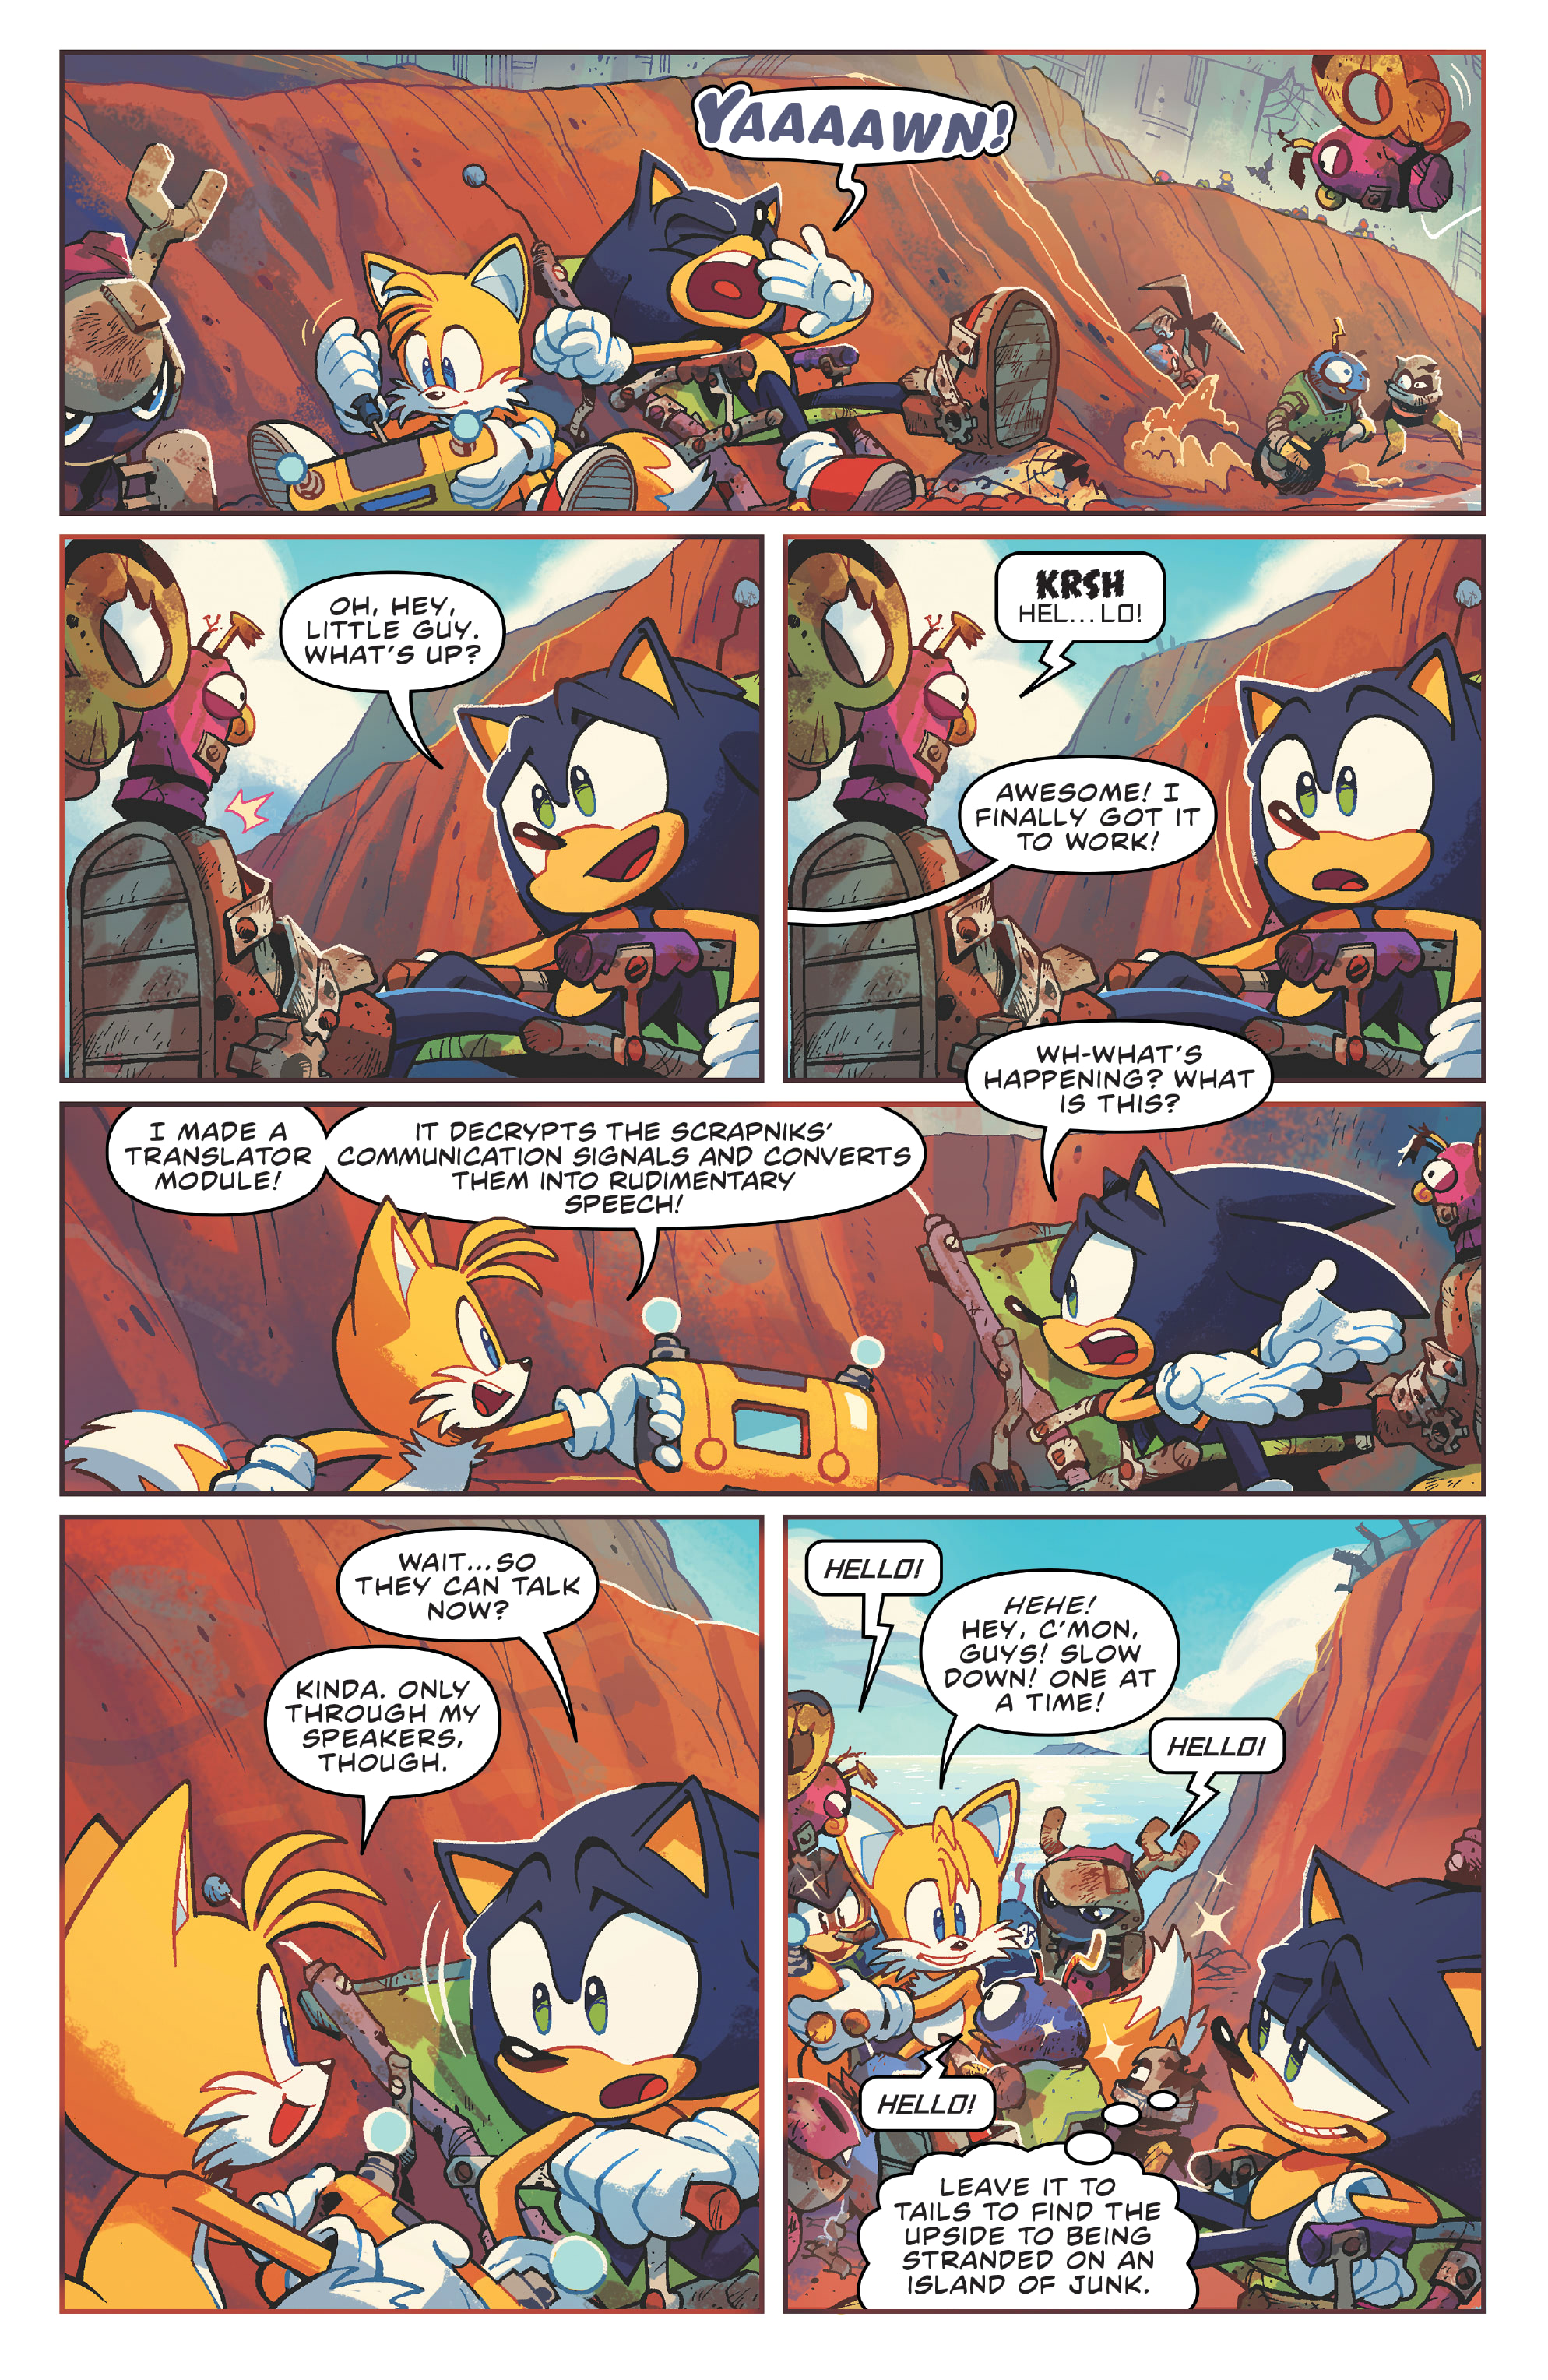 Sonic the Hedgehog: Scrapnik Island #1 - 2022 Online Exclusive